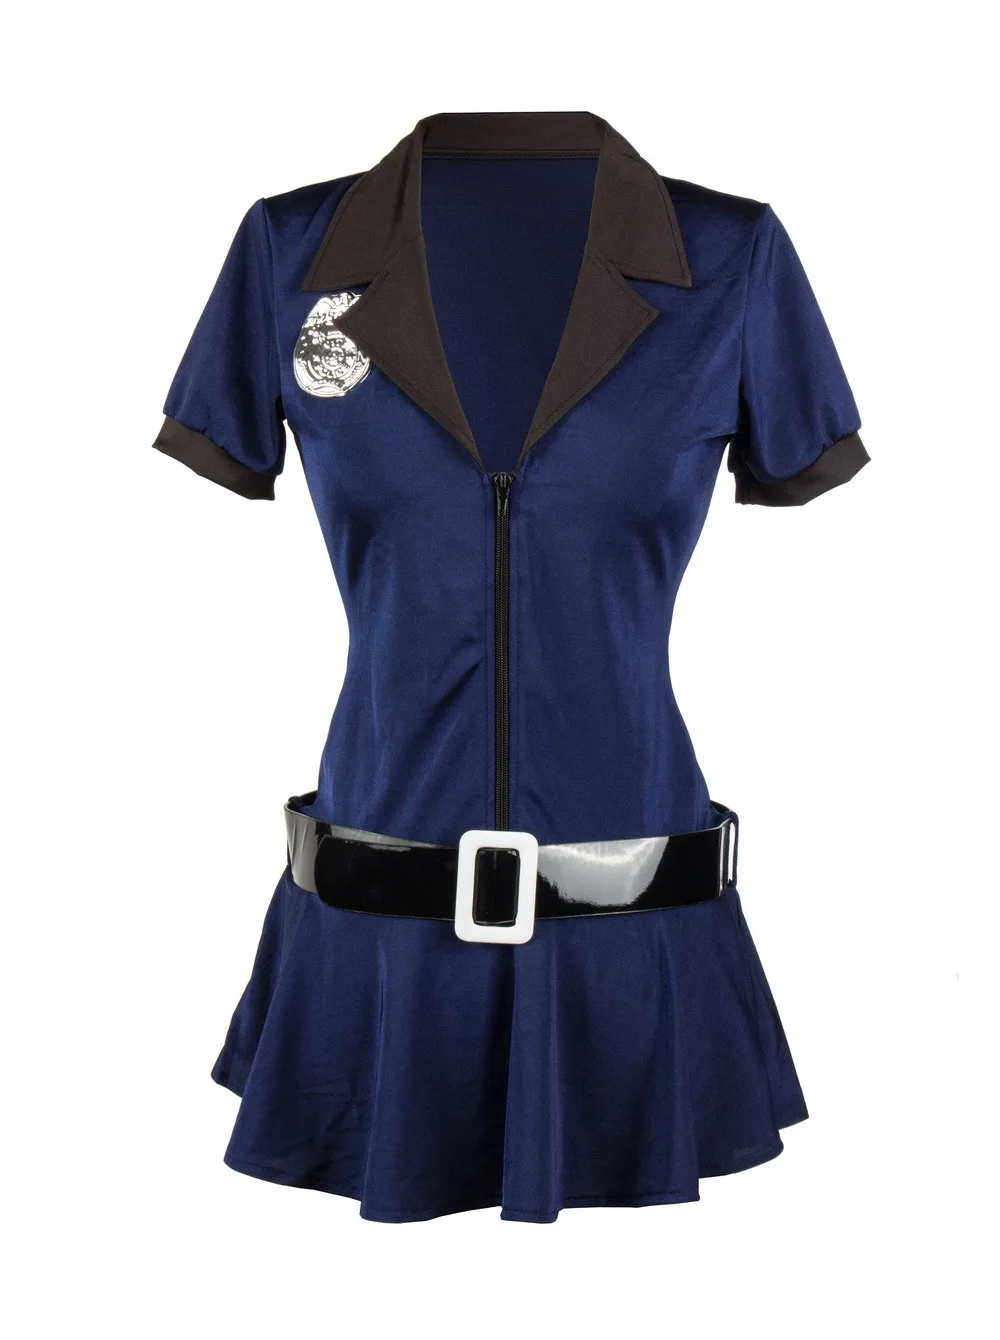 Женский сексуальный костюм, костюм полицейского, платья для косплея, униформа размера плюс S-XXXL